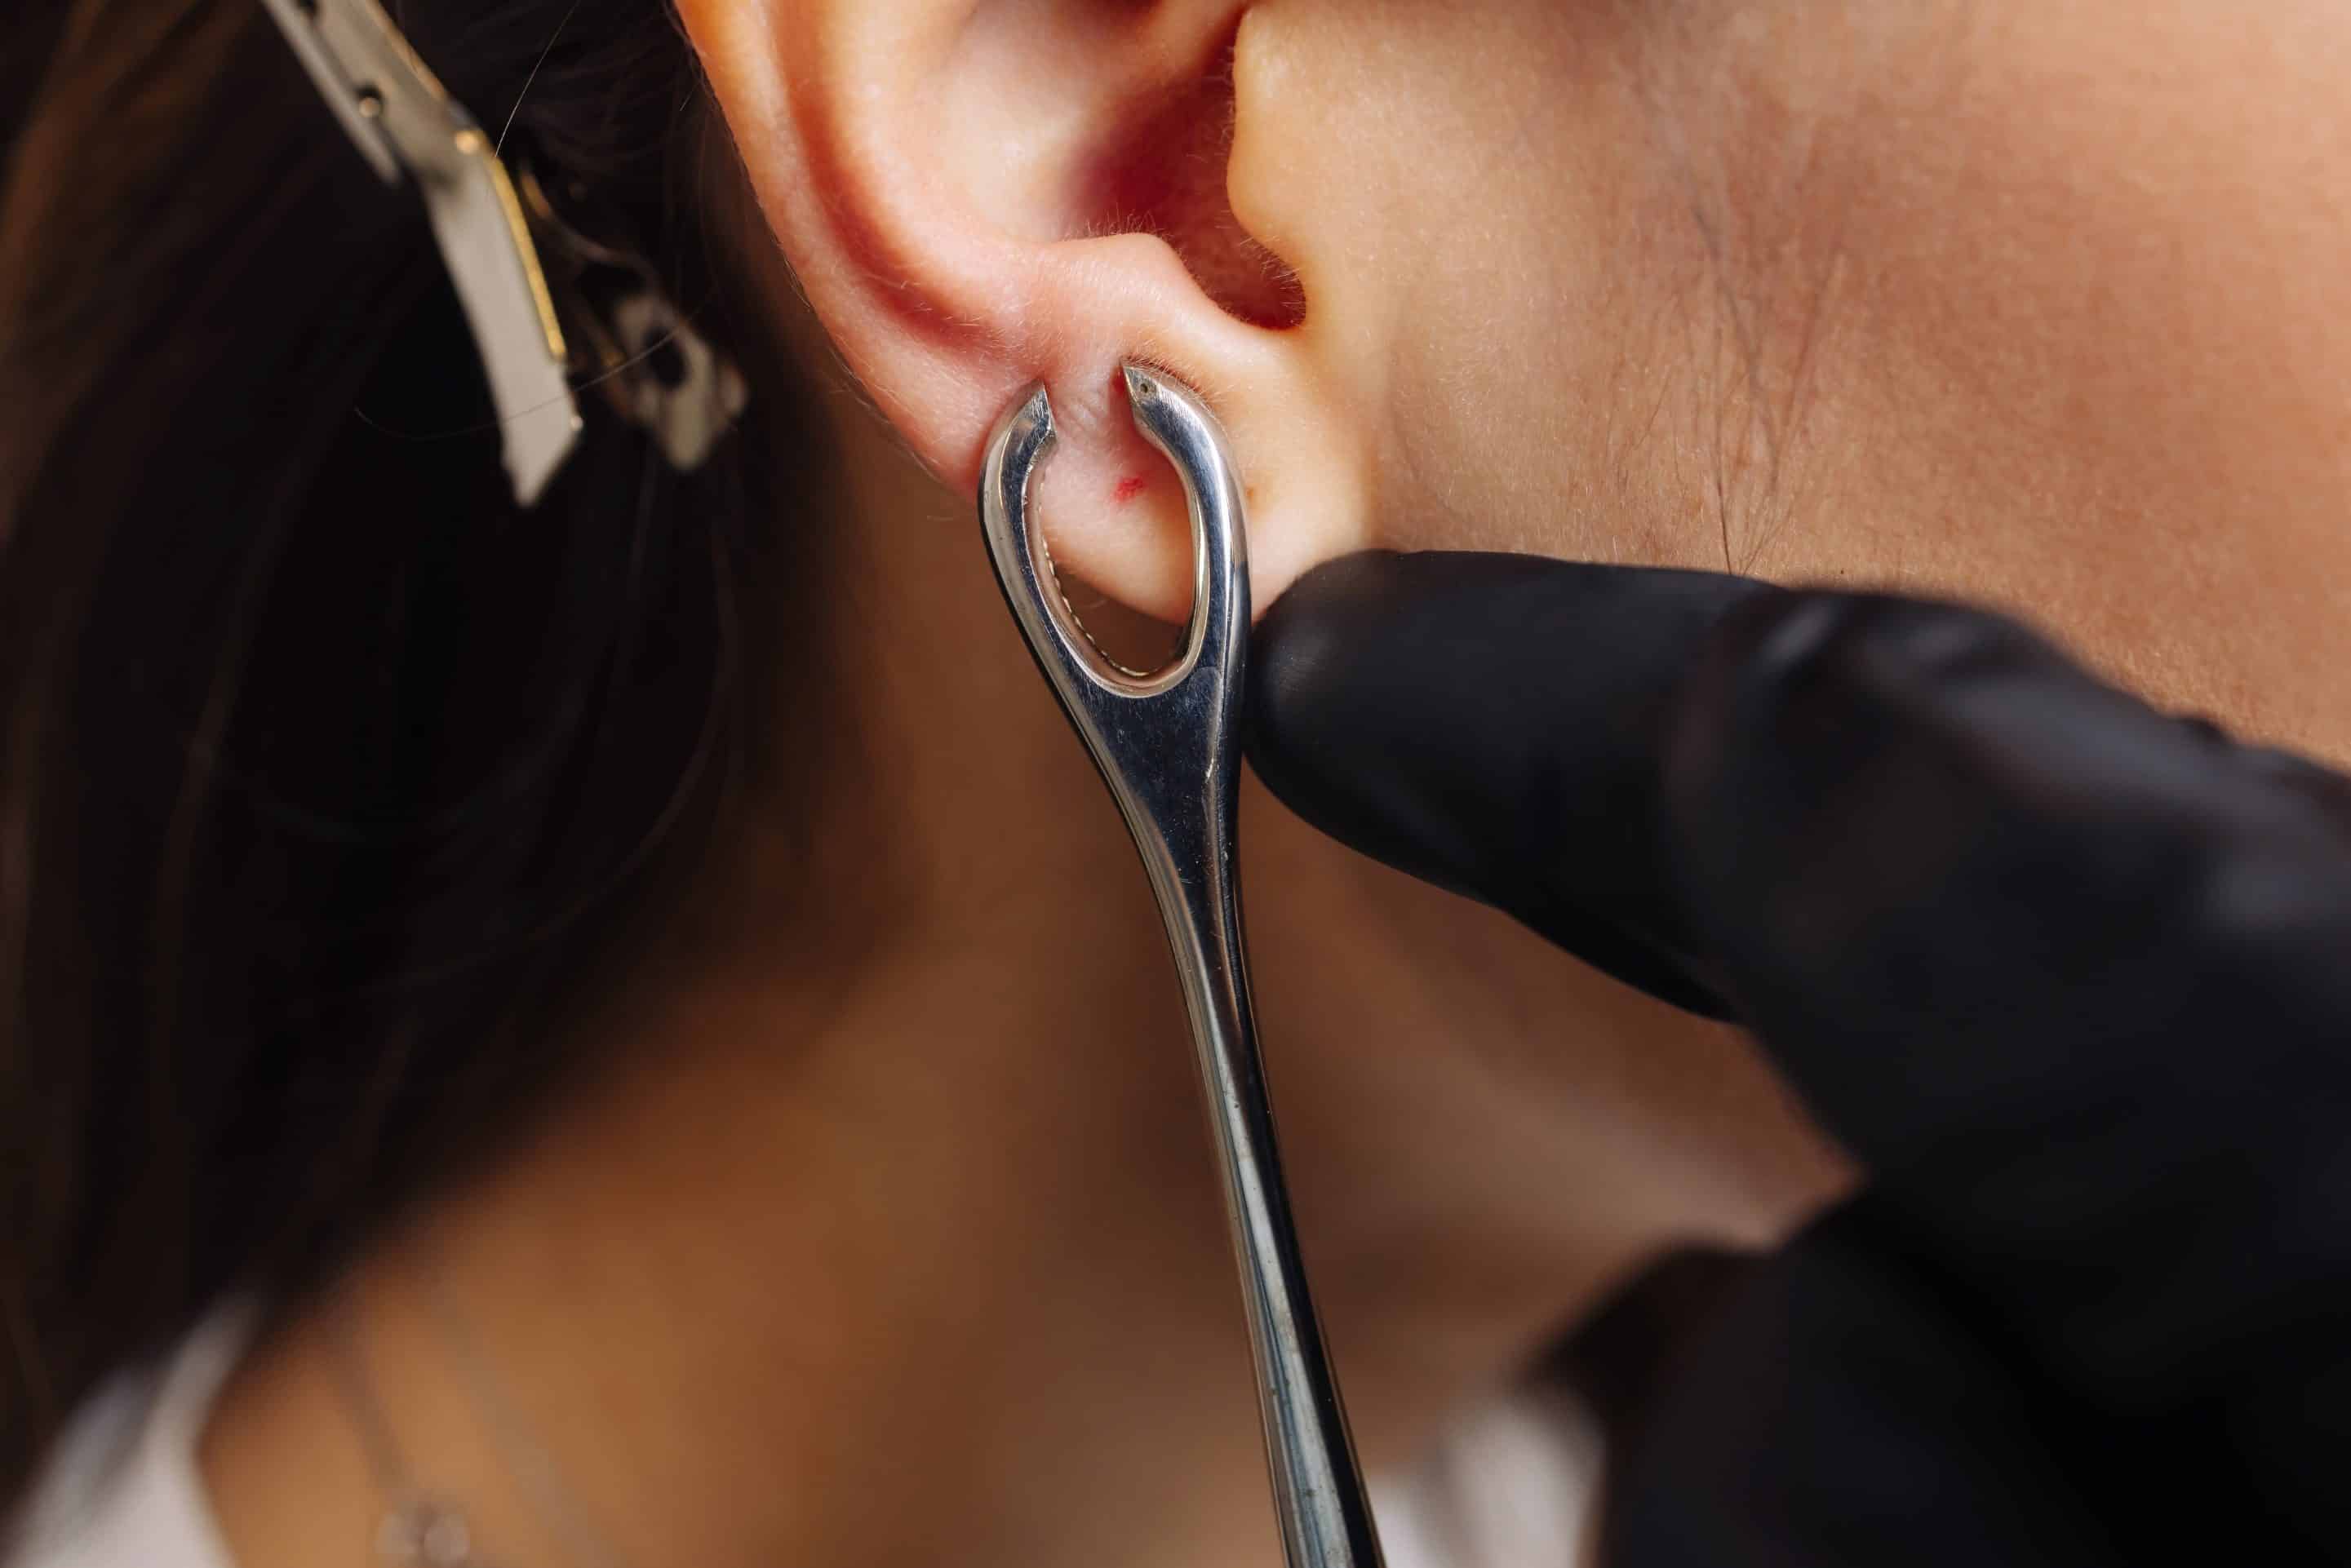 earlobe repair surgery Process